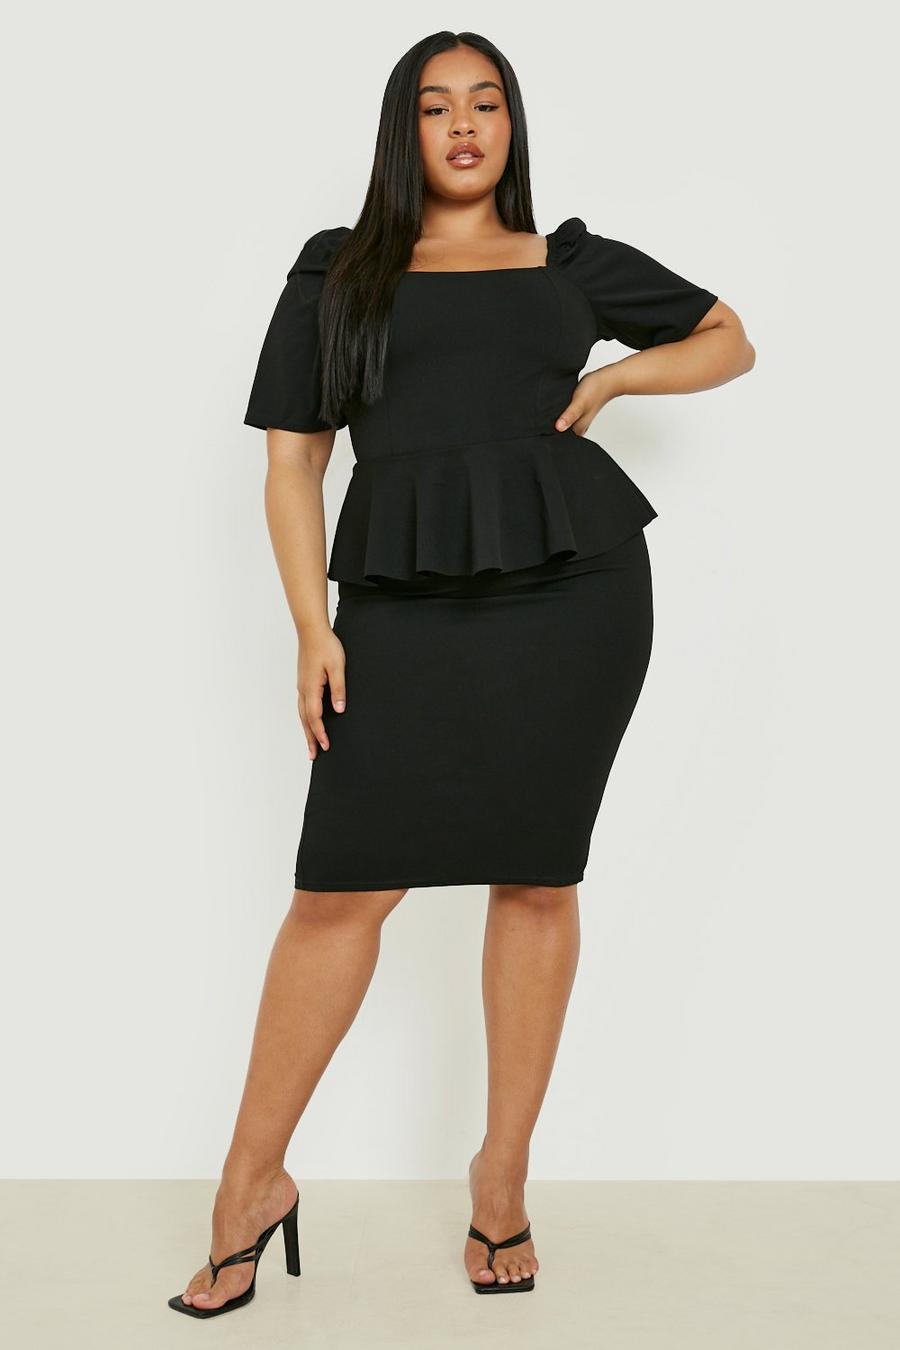 https://media.boohoo.com/i/boohoo/pzz67659_black_xl/female-black-plus-peplum-puff-sleeve-midi-dress/?w=900&qlt=default&fmt.jp2.qlt=70&fmt=auto&sm=fit